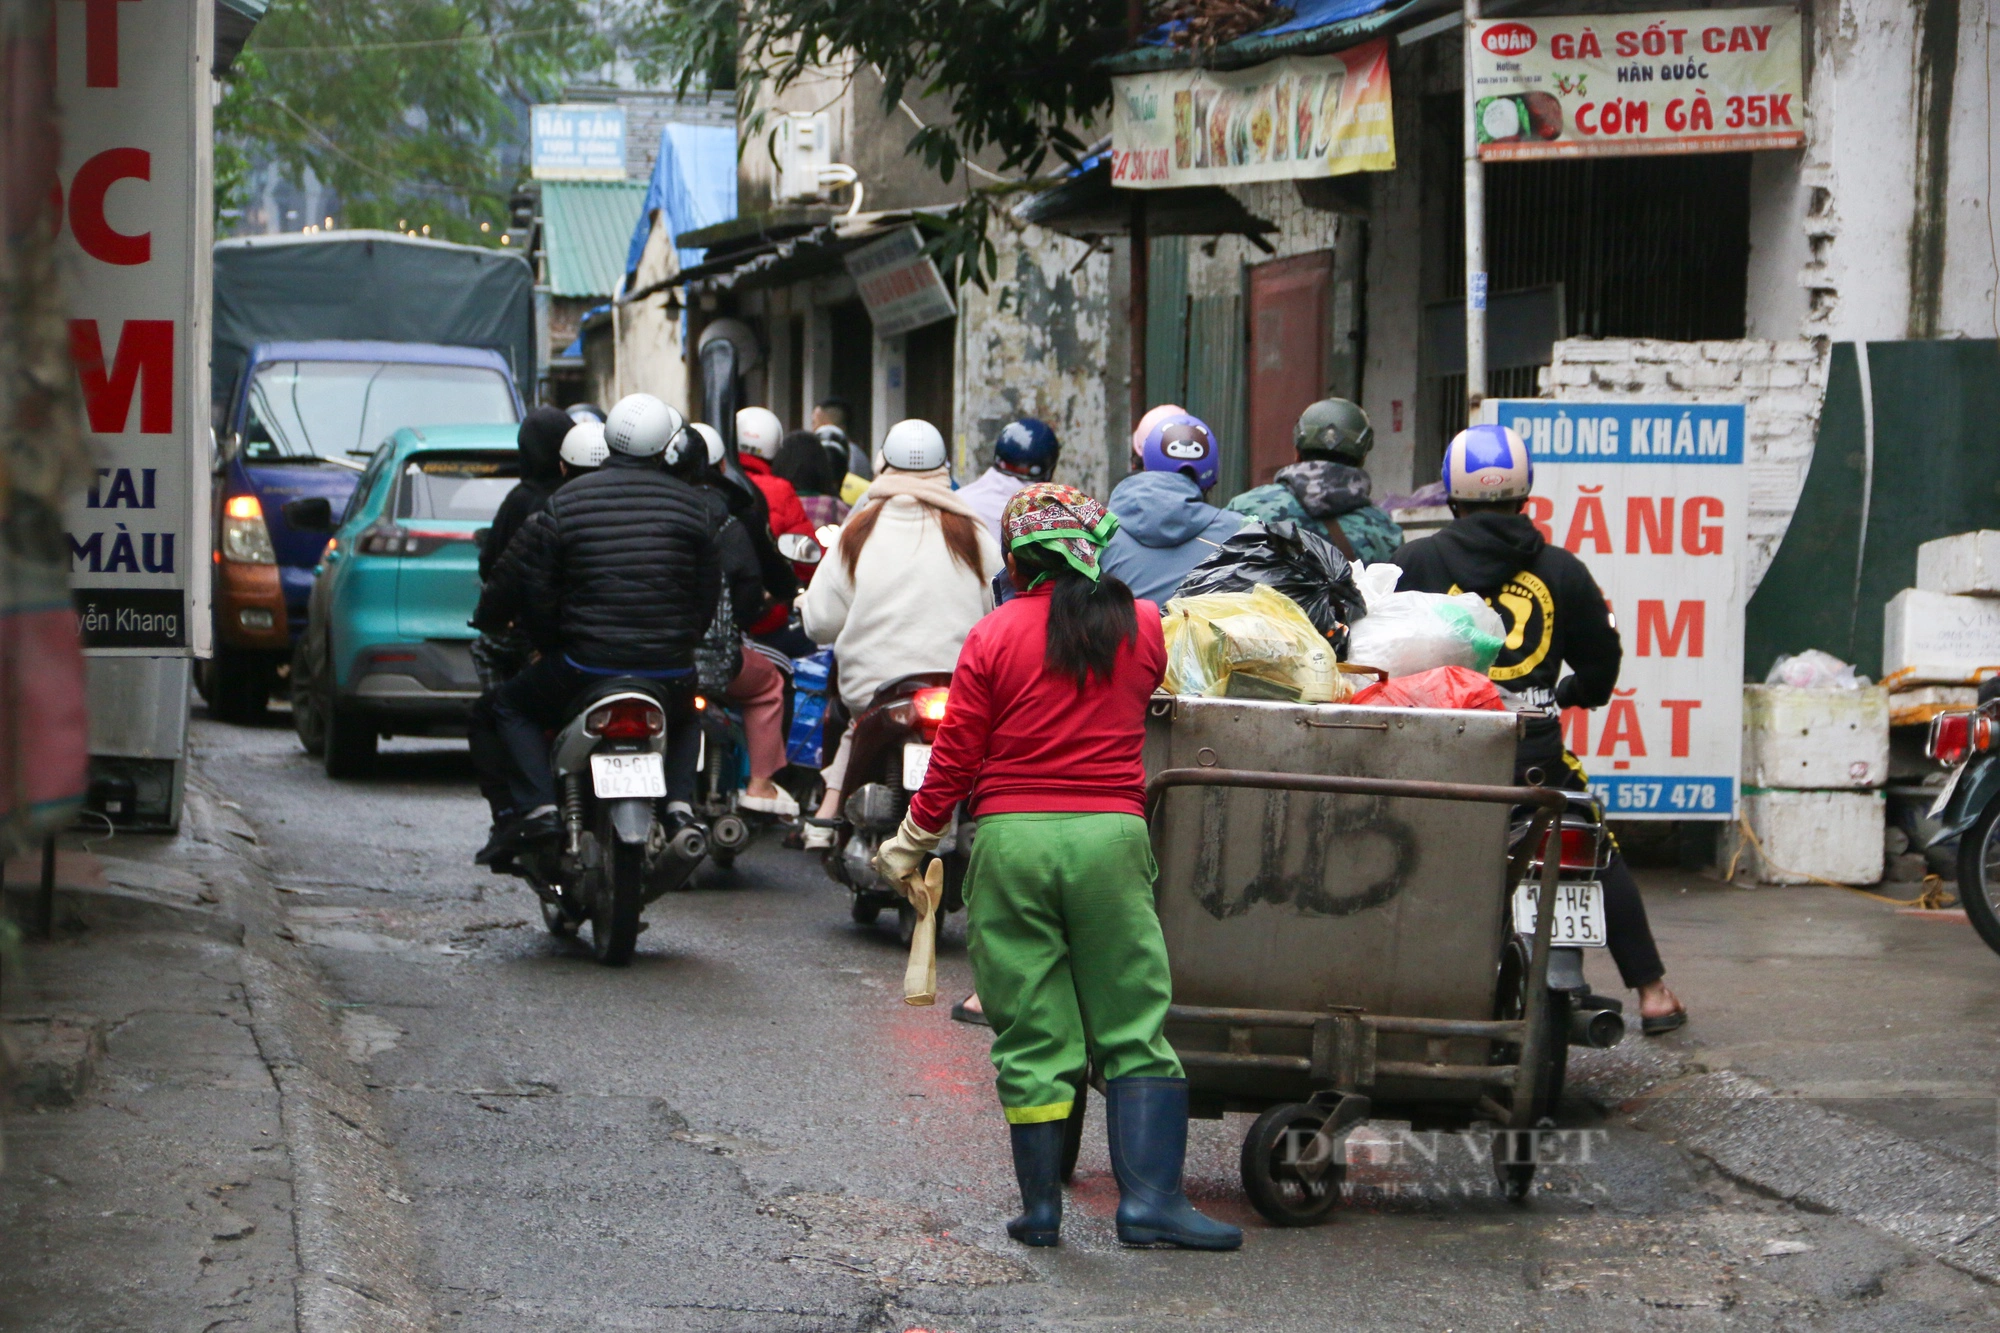 Mòn mỏi chờ dự án triển khai, người dân Hà Nội chật vật di chuyển trên con đường chi chít "ổ voi ổ gà"- Ảnh 6.